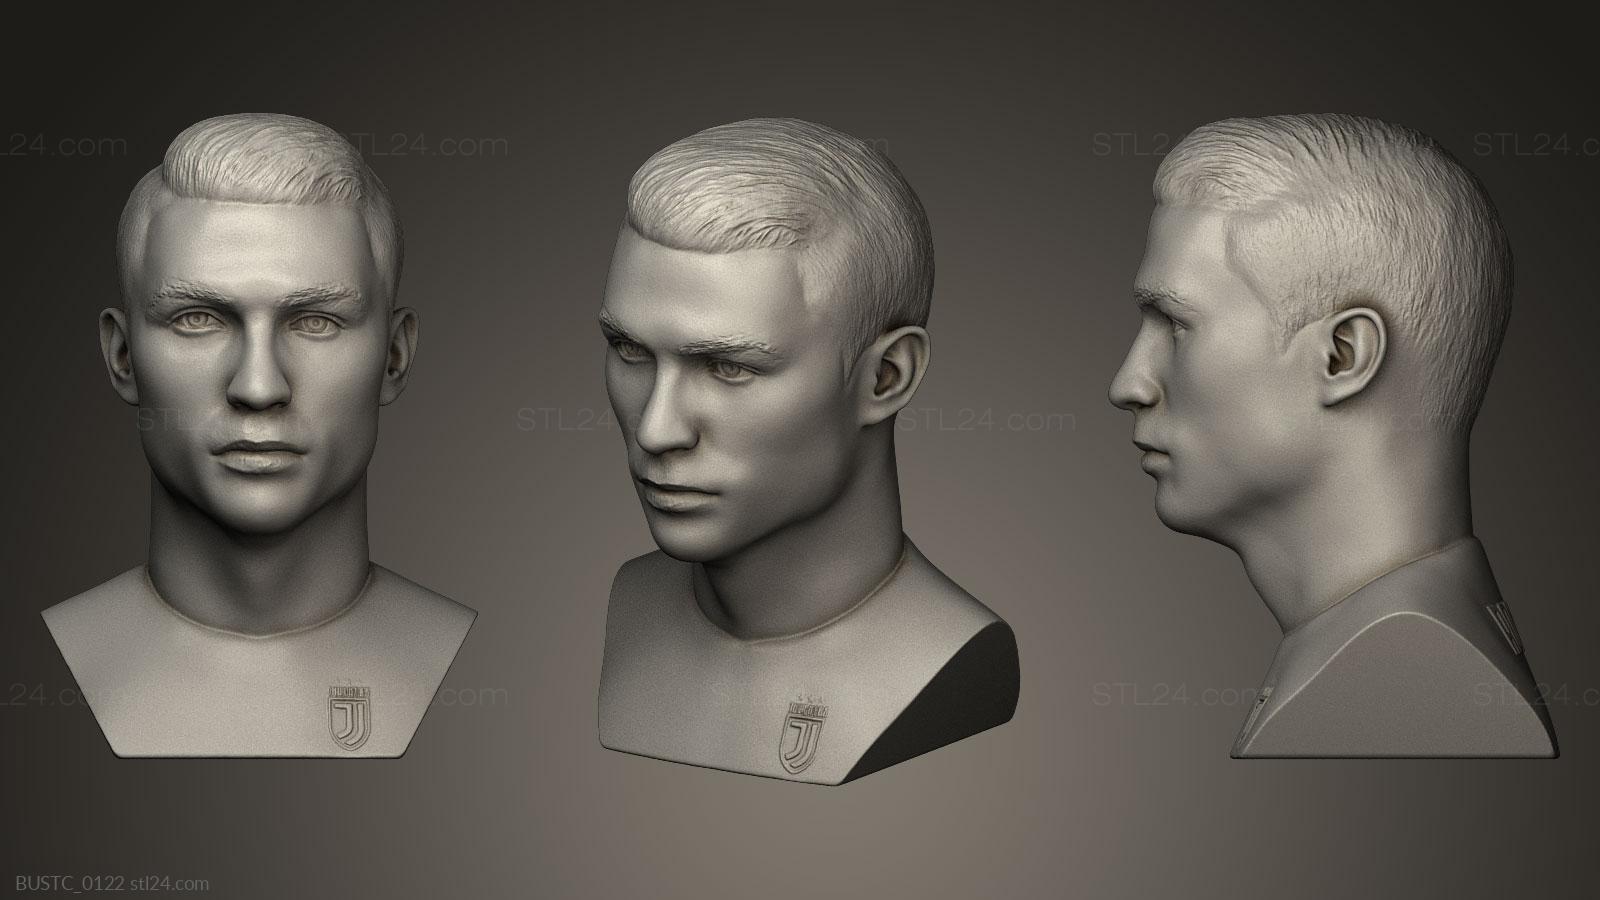 Бюсты и барельефы известных личностей (Криштиану Роналду, BUSTC_0122) 3D модель для ЧПУ станка